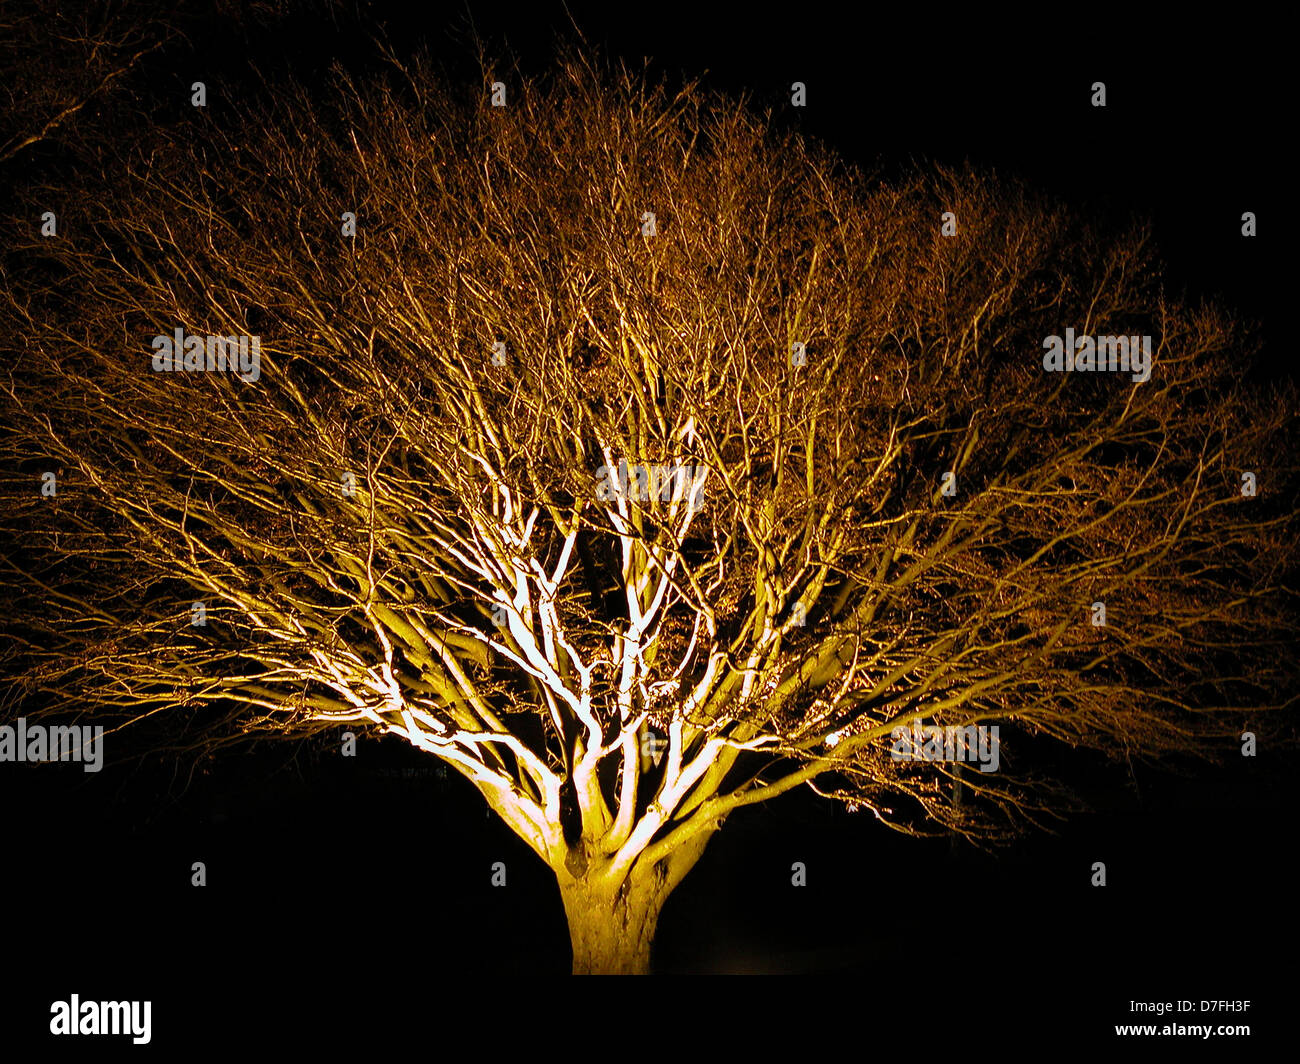 Tree in Kellenhusen at night Stock Photo